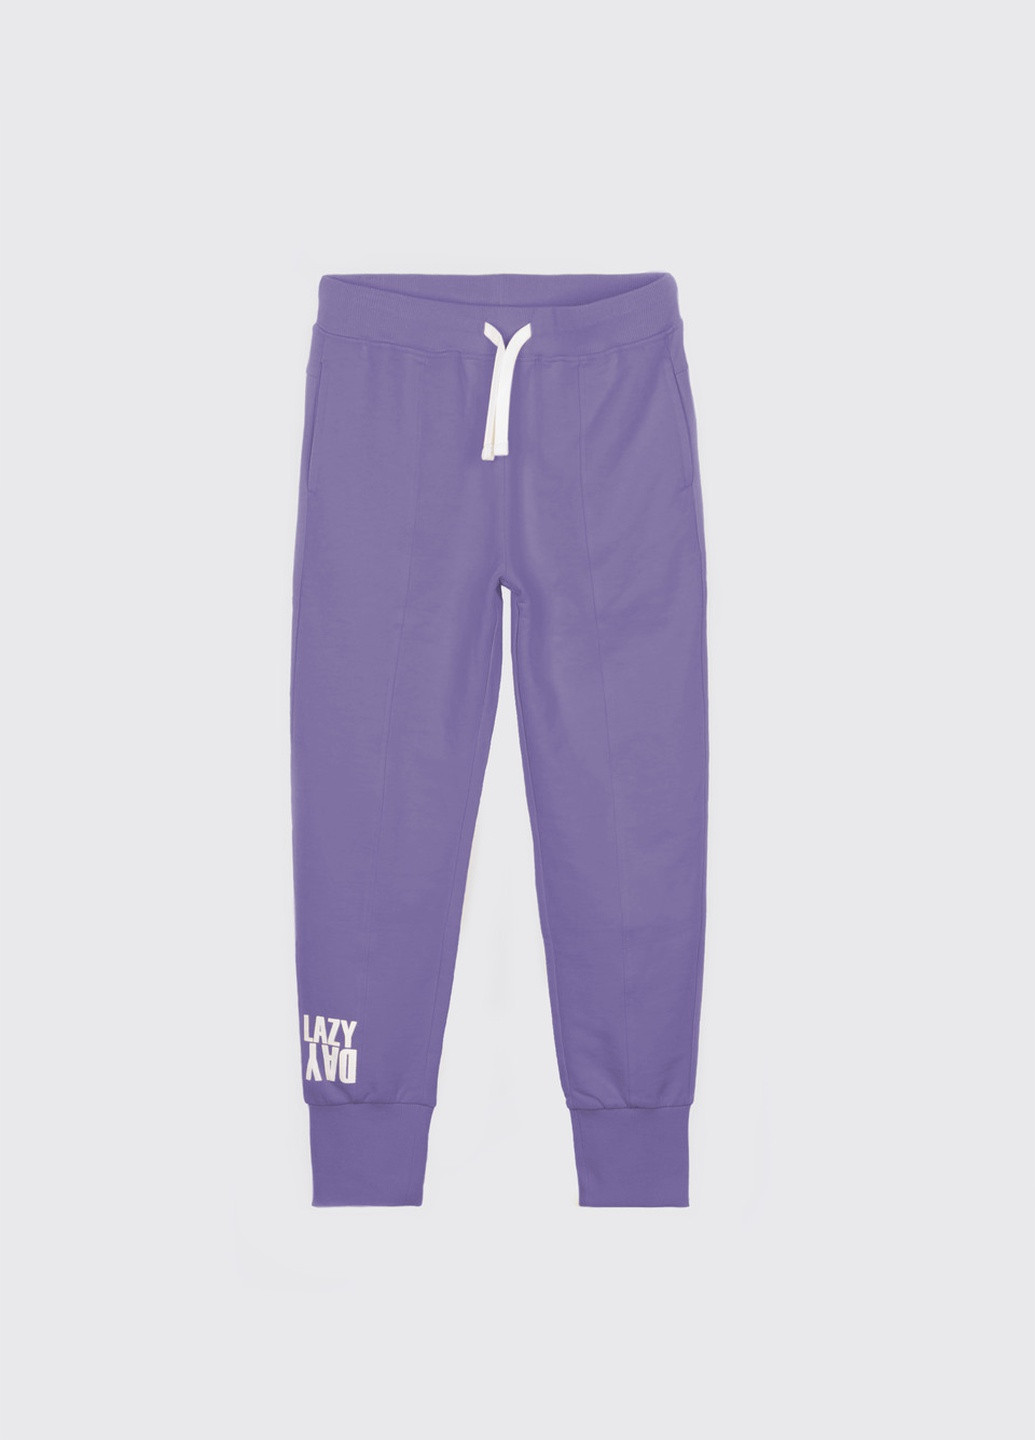 Фиолетовые брюки Coccodrillo